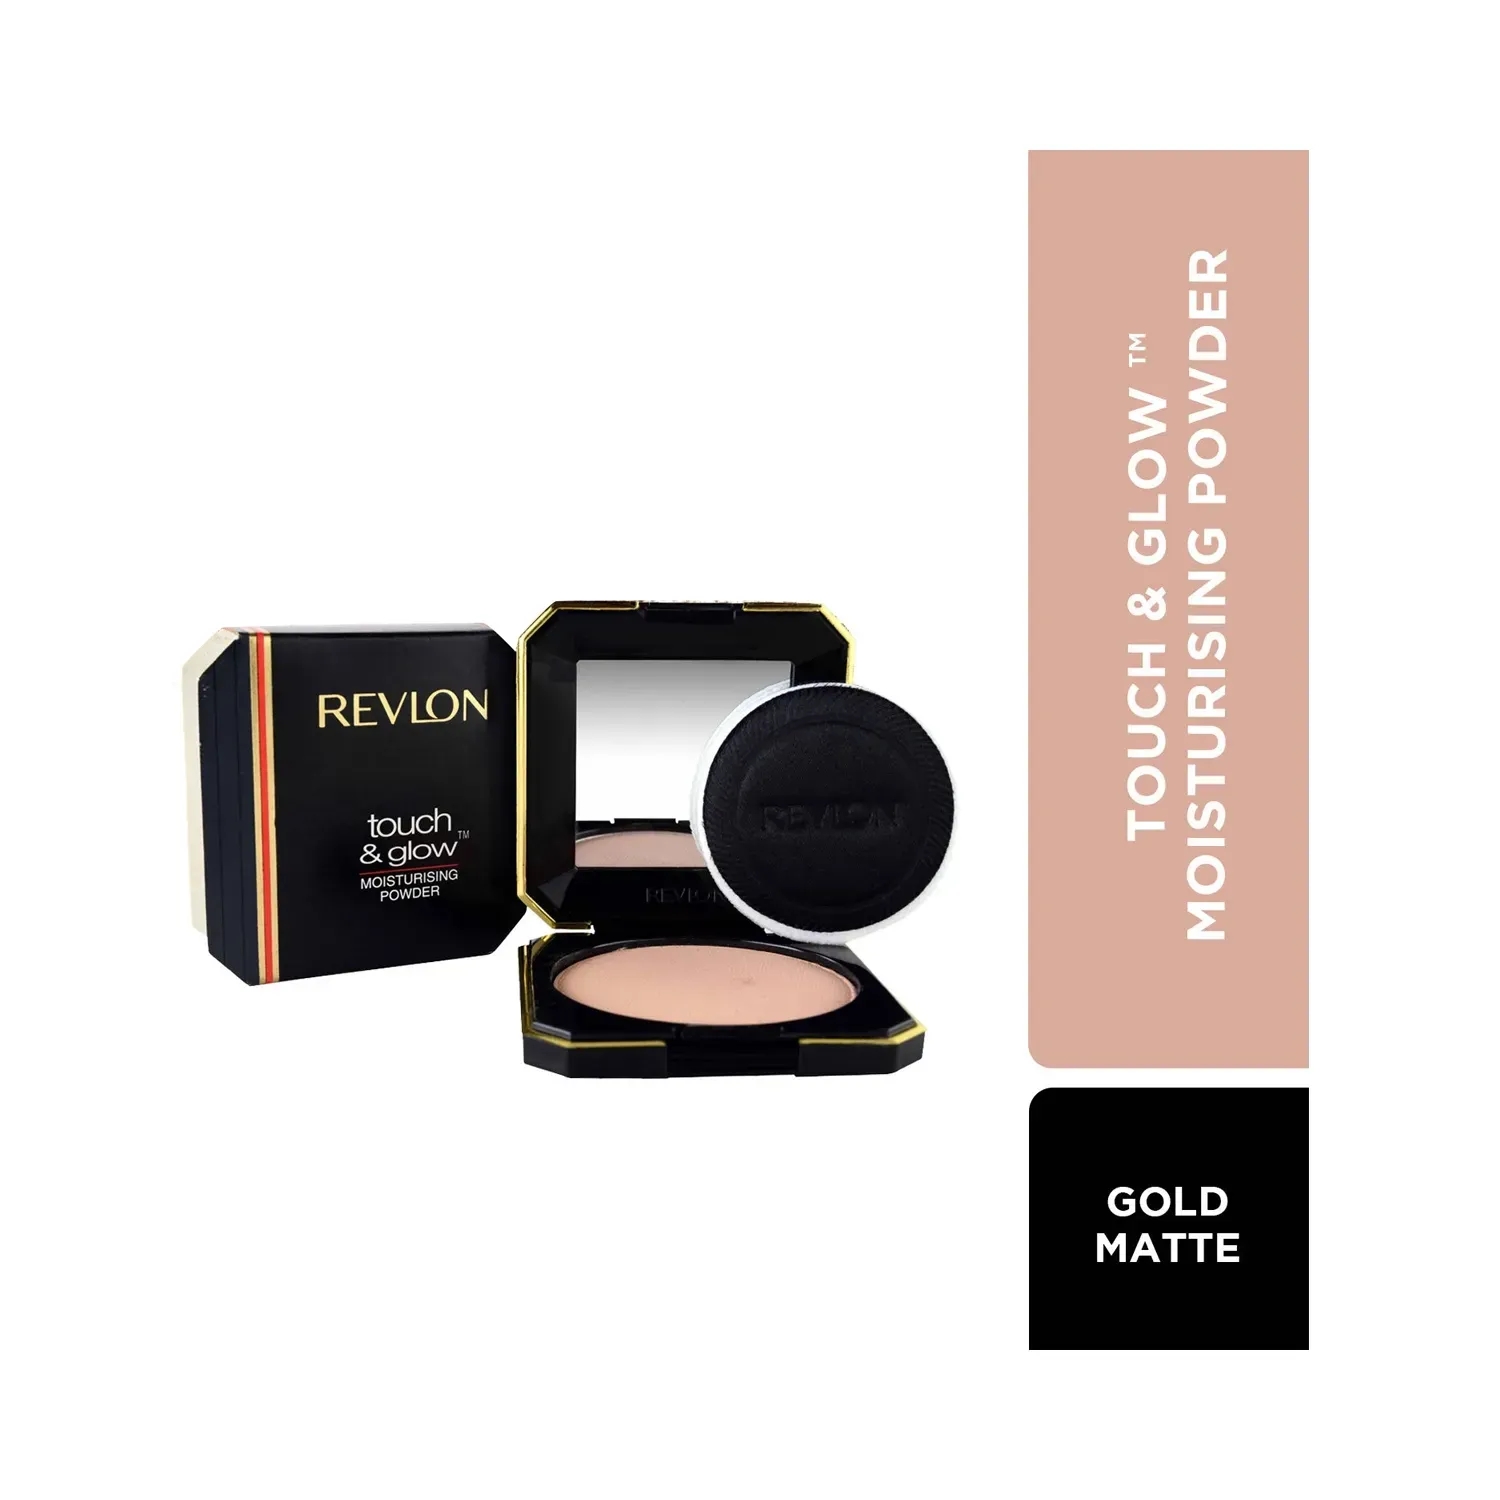 Revlon Touch & Glow Powder - Gold Matte (12g)